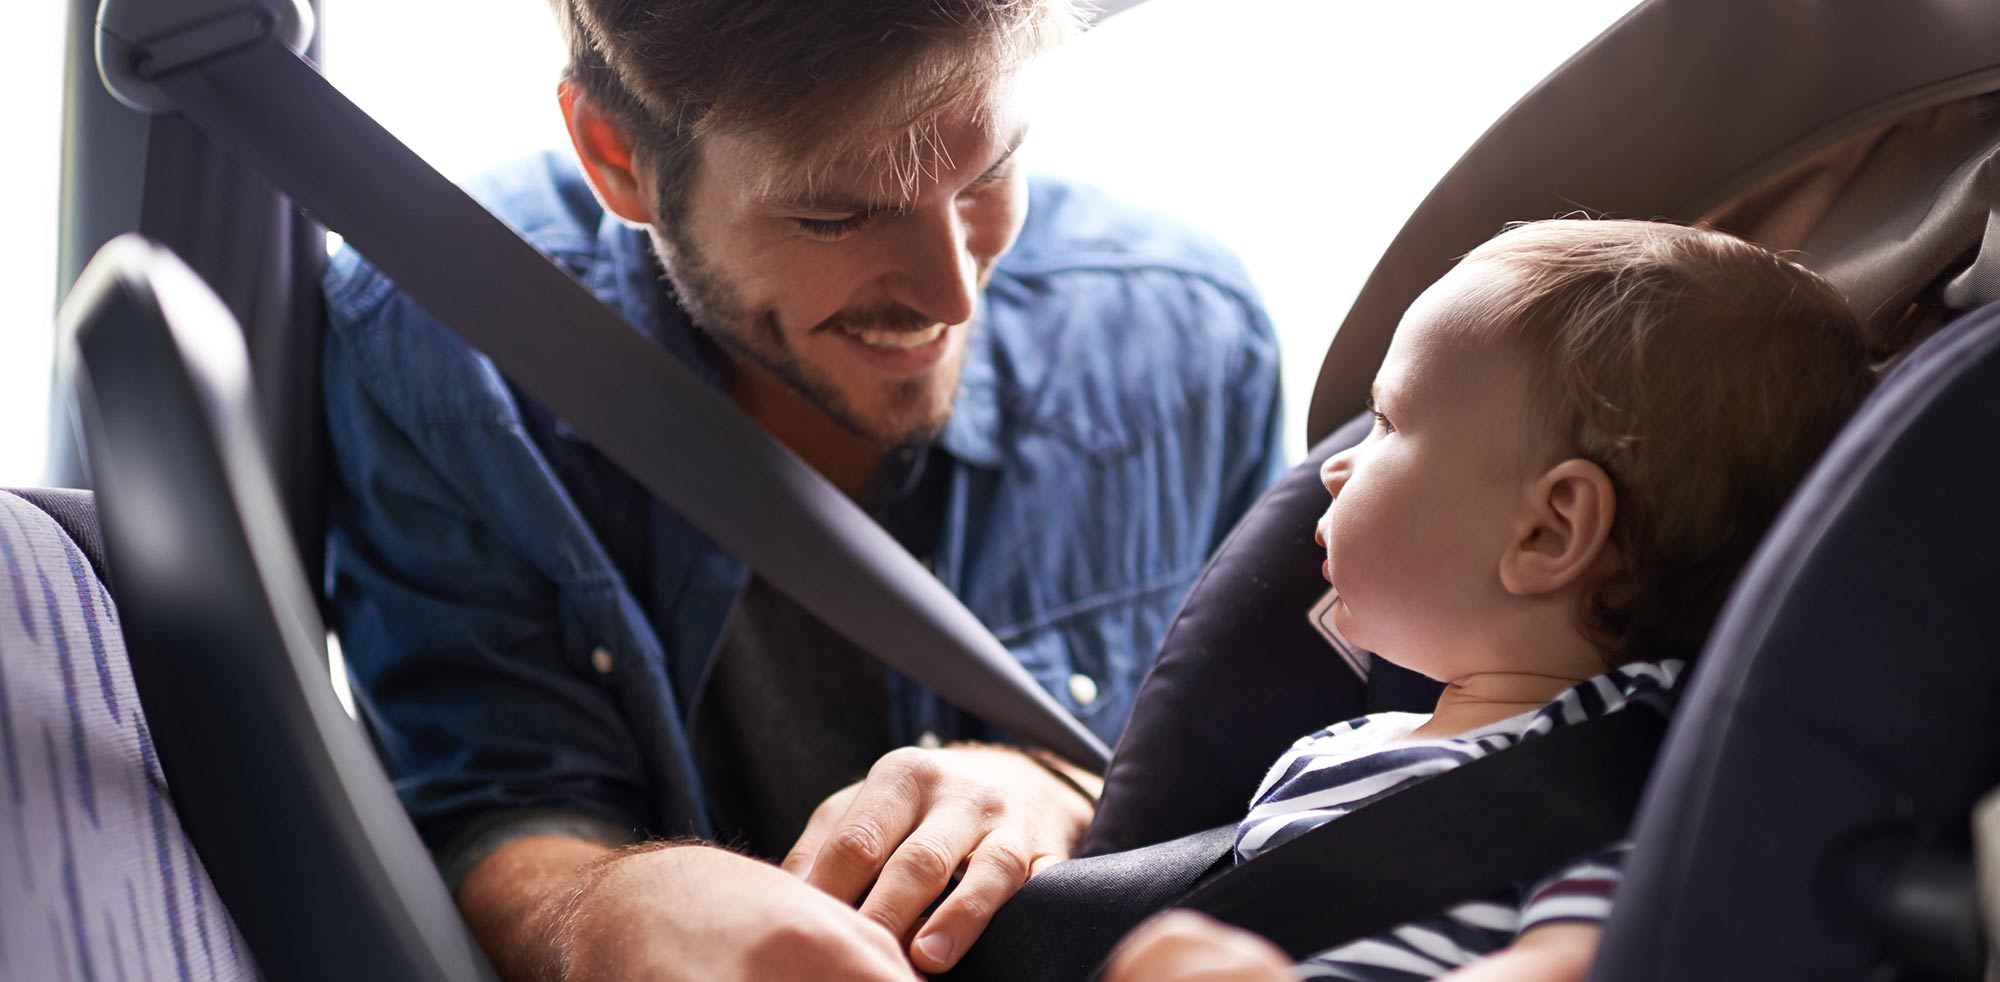 AvD Artikel - Elternteil ohne Zeitdruck im Auto bei einer Elternzeitreise